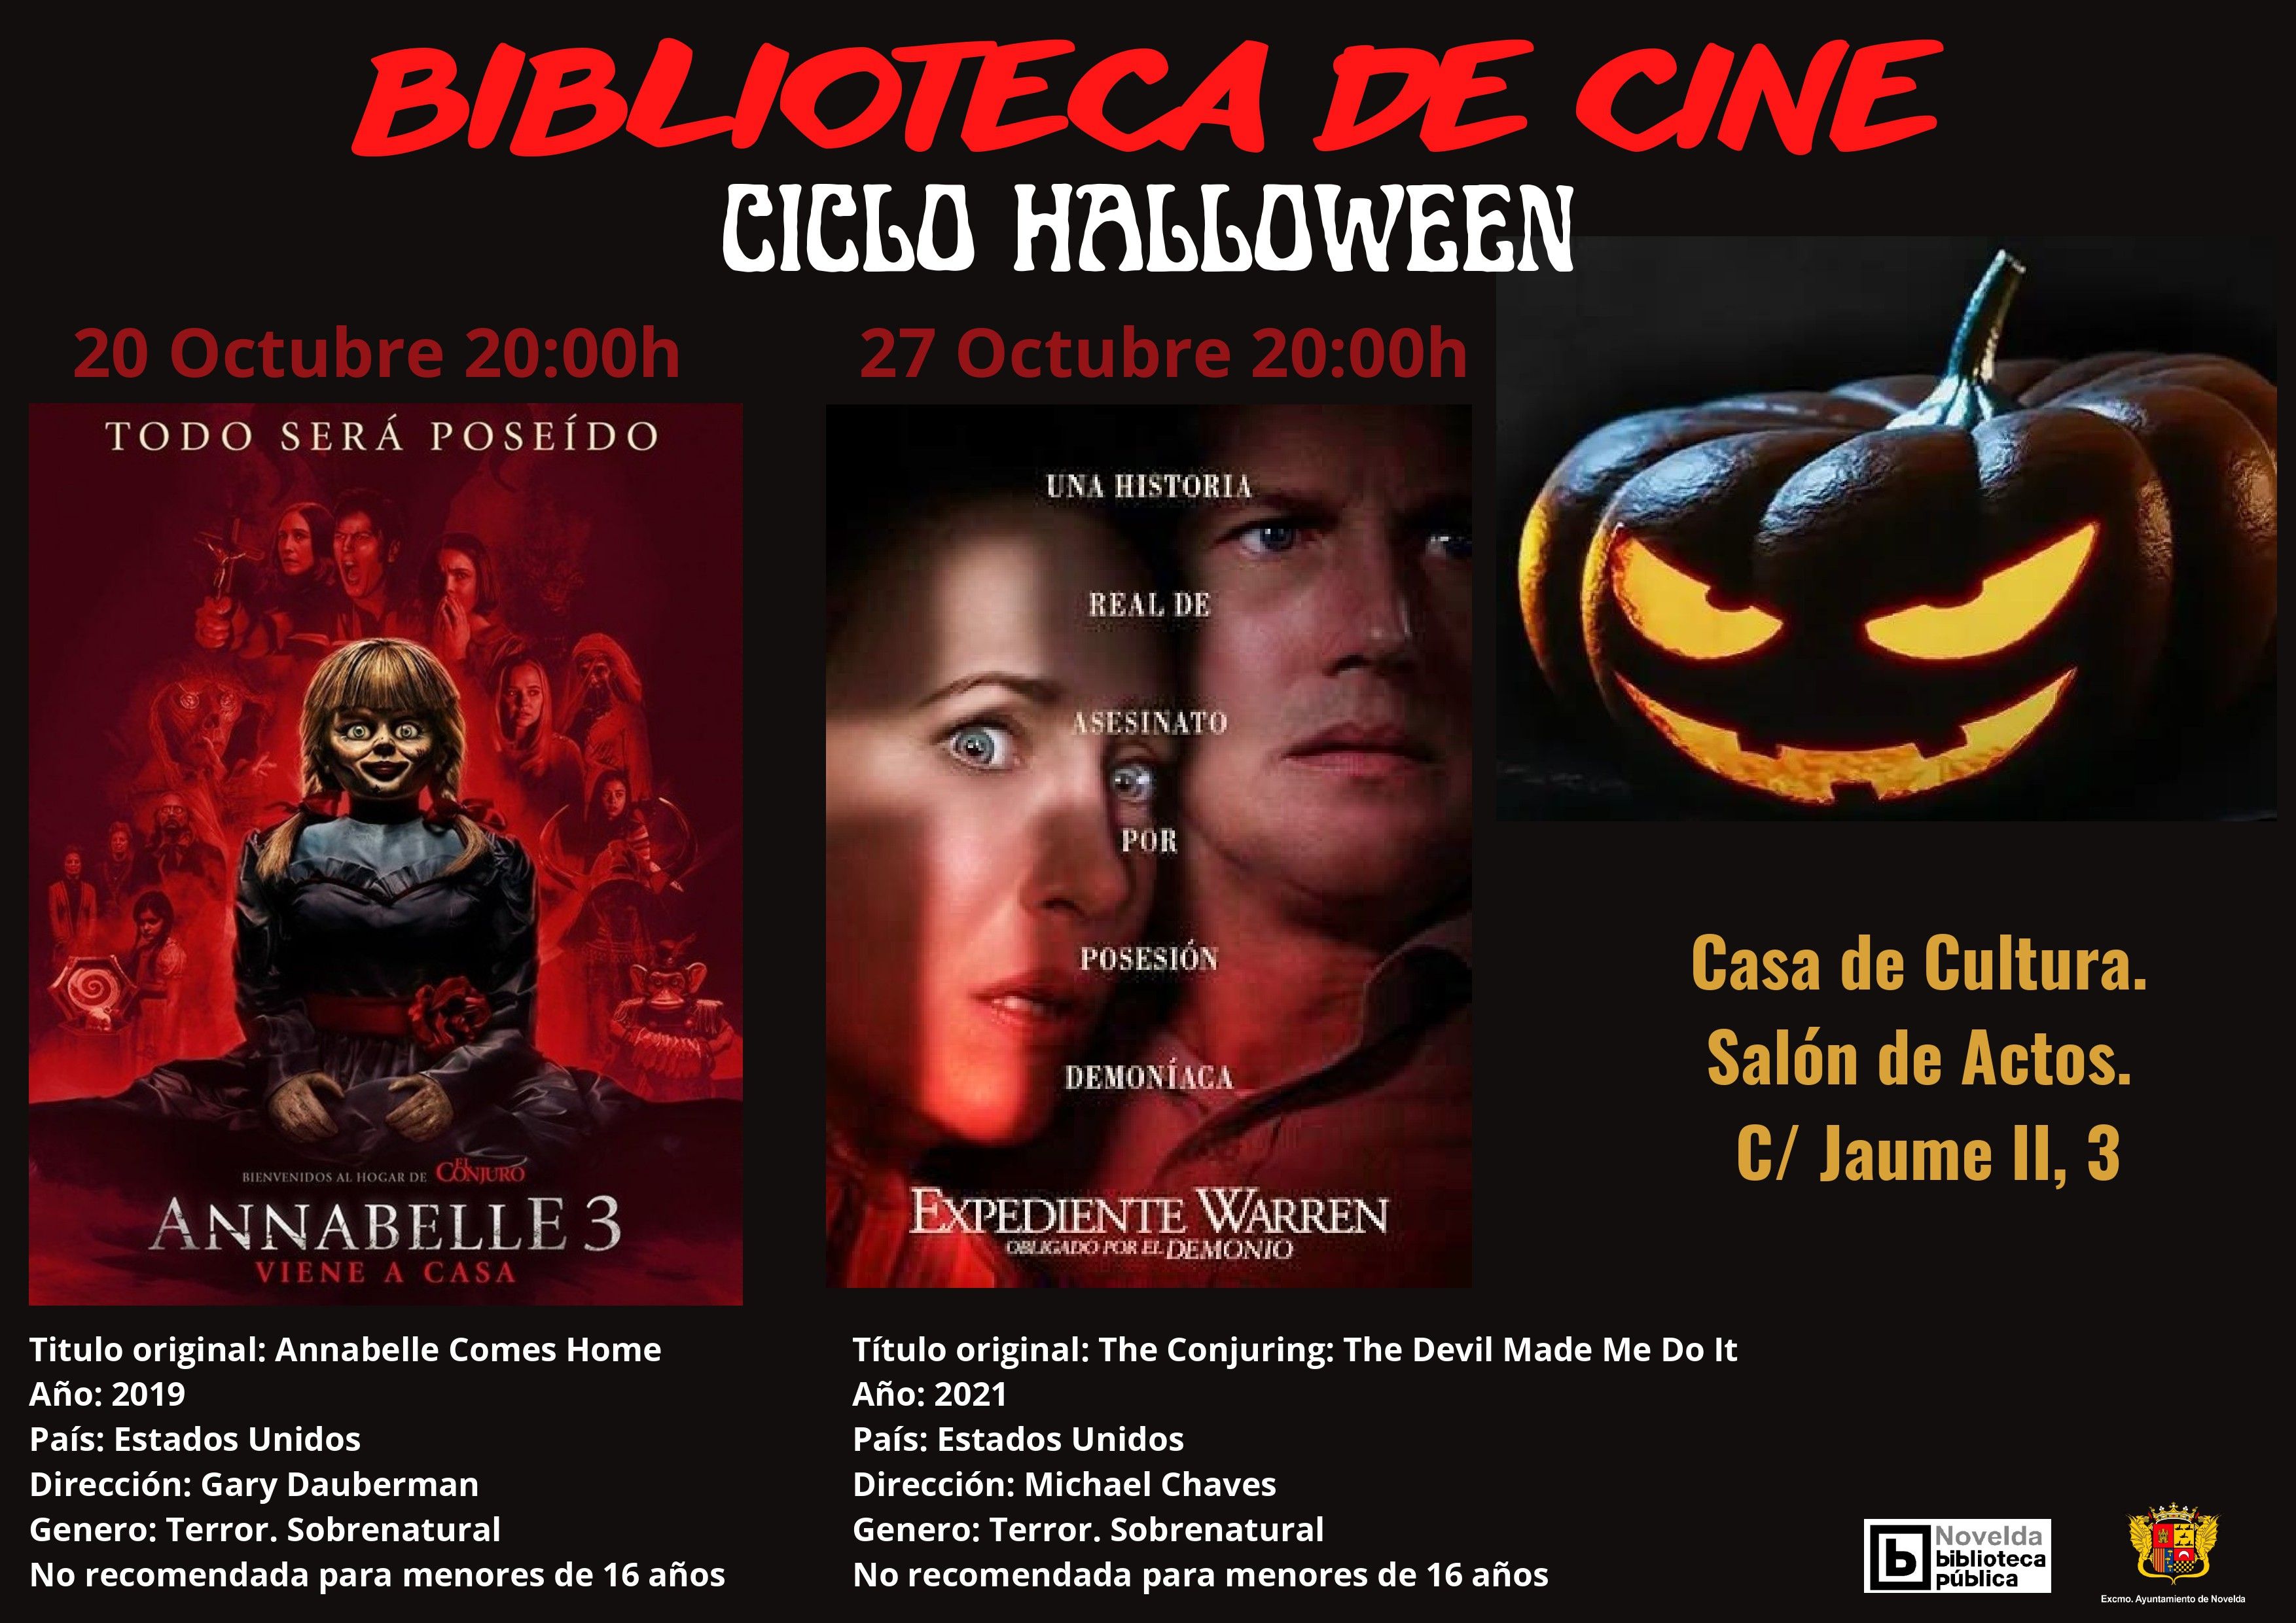 Ayuntamiento de Novelda CARTEL-CICLO-HALLOWEEN ANABELLE 3 - Ciclo Halloween de la Biblioteca de Cine 